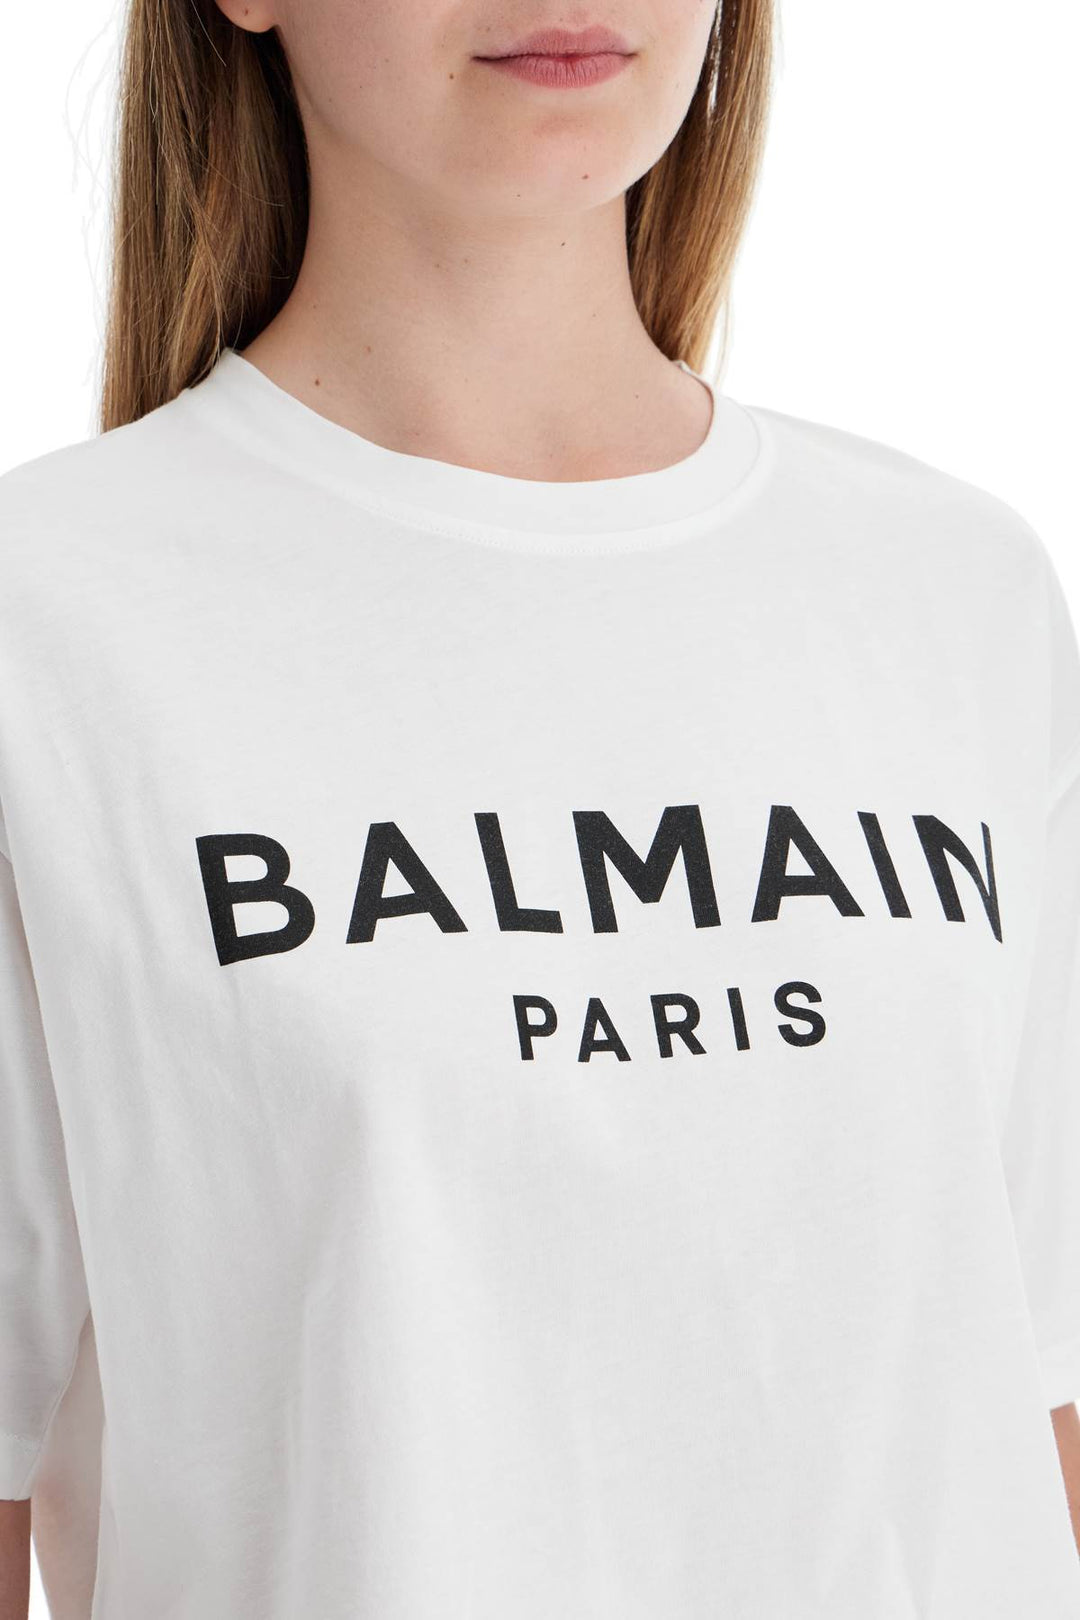 Balmain Logo Print Boxy T Shirt   White